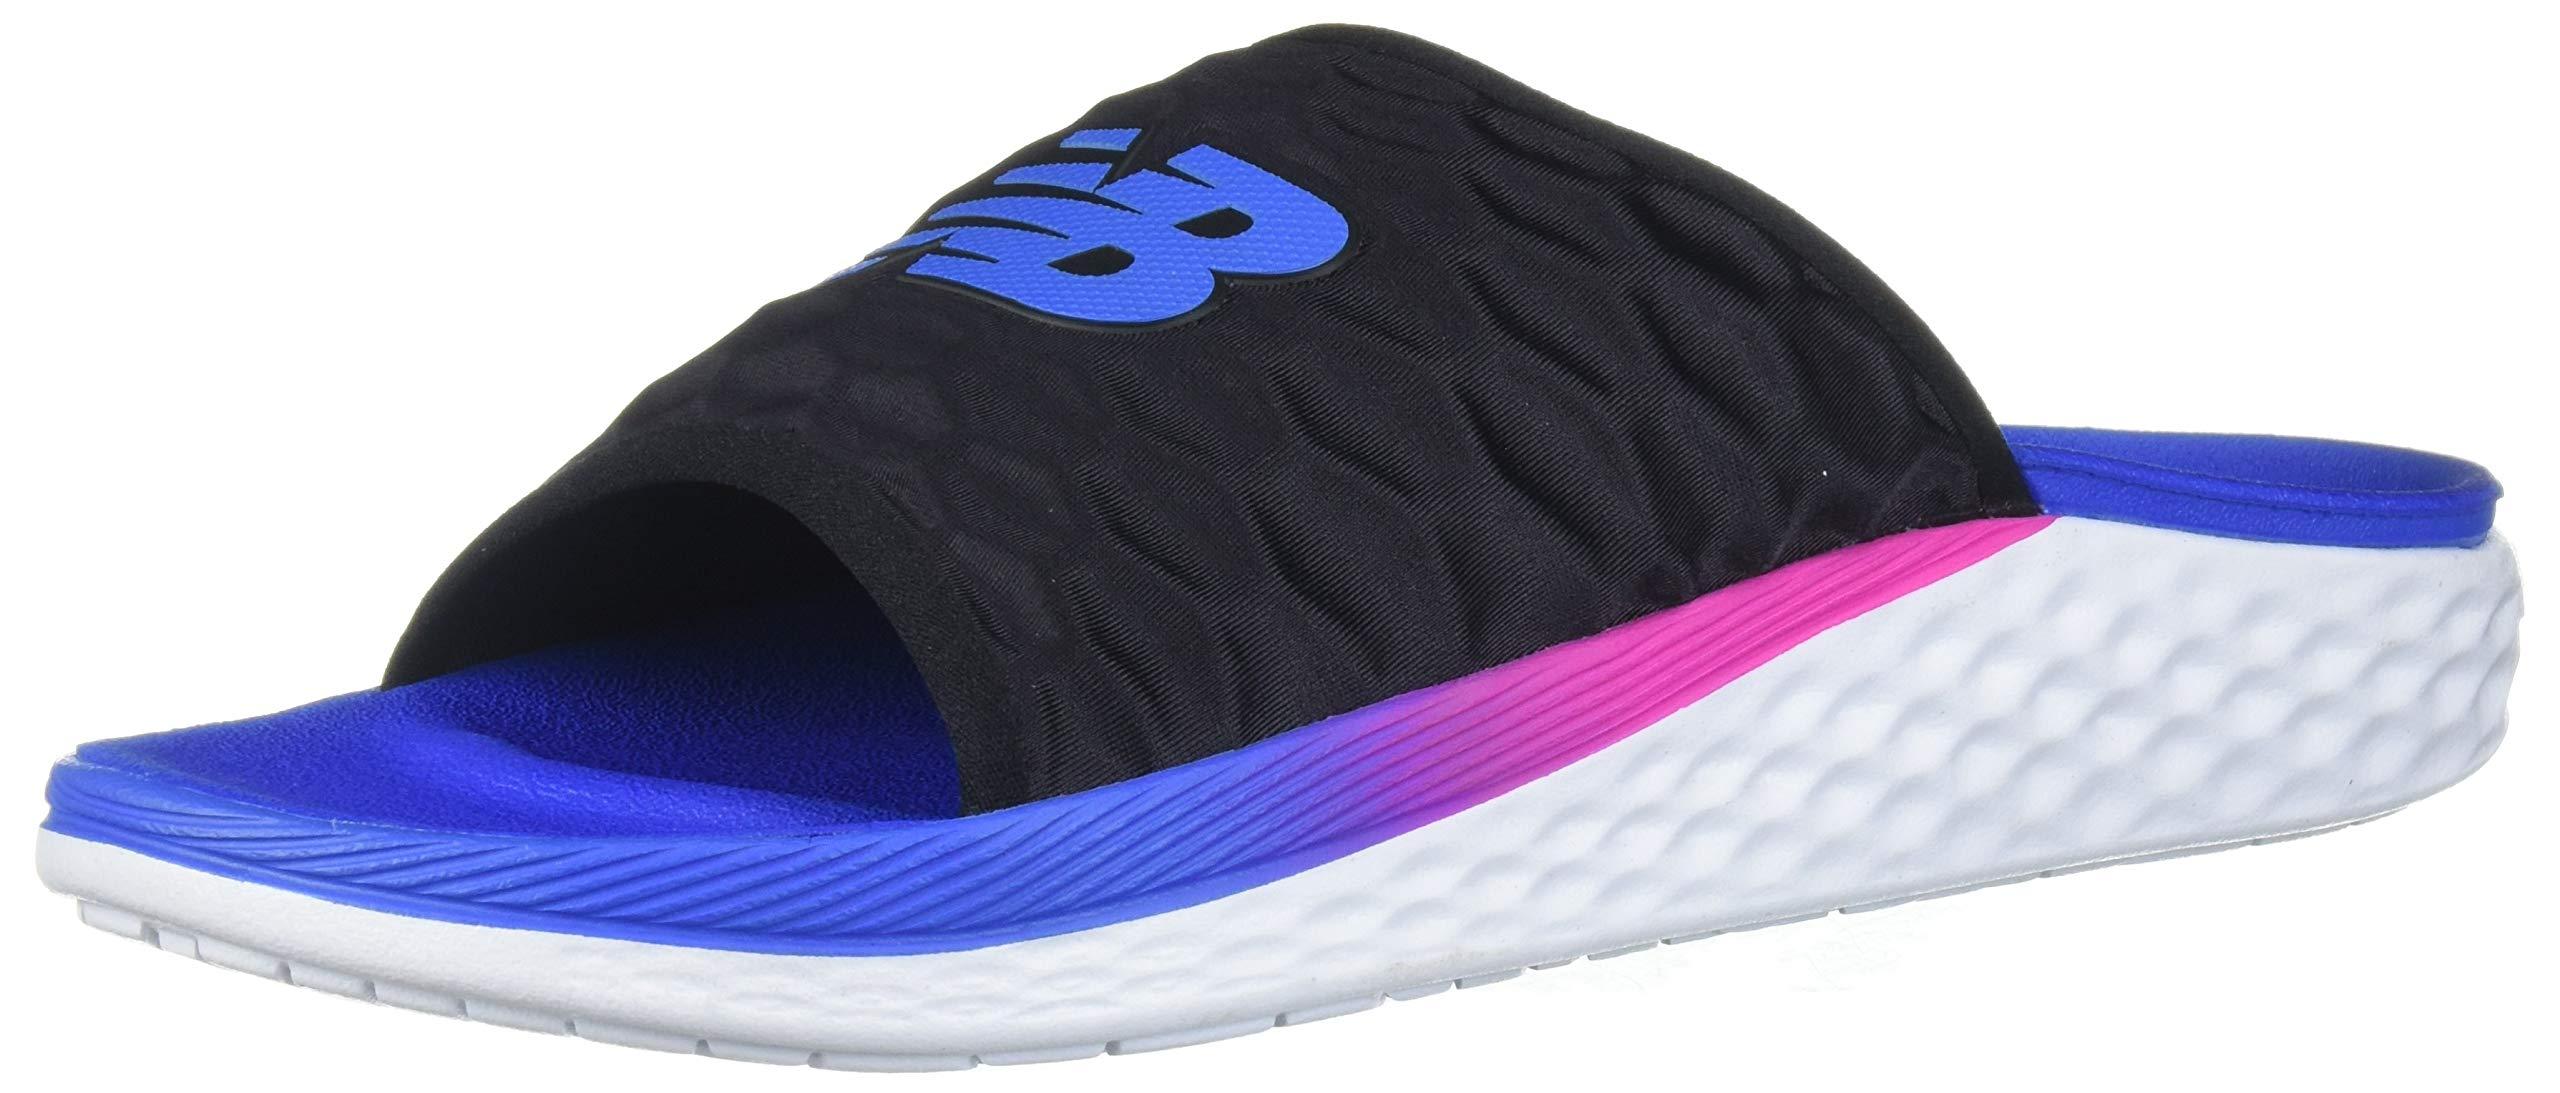 ويندوز  مجانا New Balance Rubber Hupo'o V1 Fresh Foam Slide Sandal for Men | Lyst ويندوز  مجانا